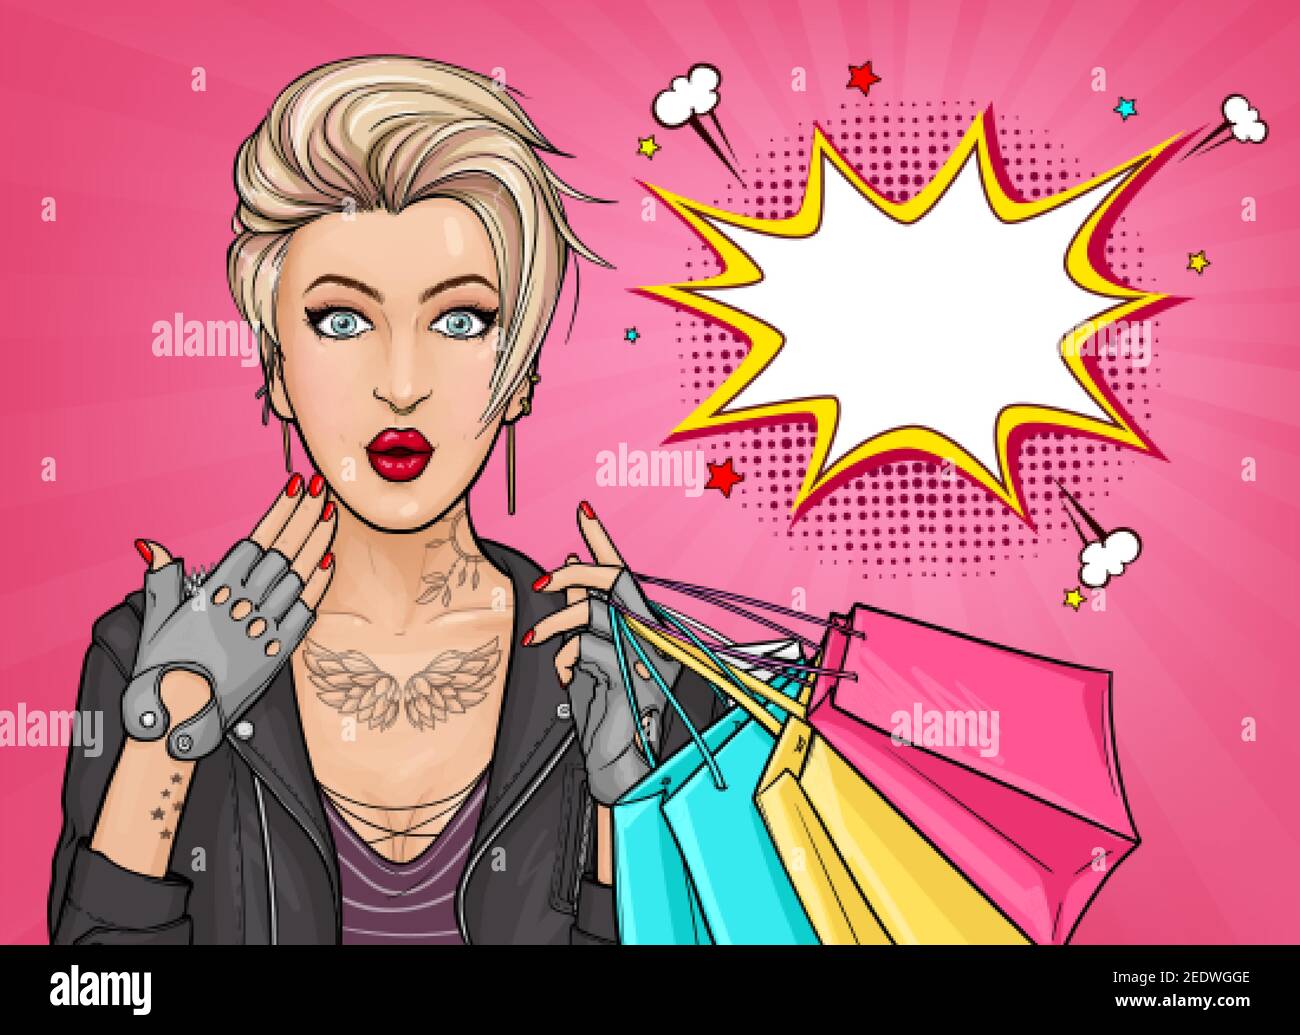 Vektor Pop Art Illustration von einem überrascht tätowiert Mädchen hält Einkaufstaschen auf rosa Hintergrund. Blonde junge Frau mit weit geöffneten Augen und Mund. Ausgezeichnetes Plakat für Werbung Rabatte oder Verkäufe Stock Vektor